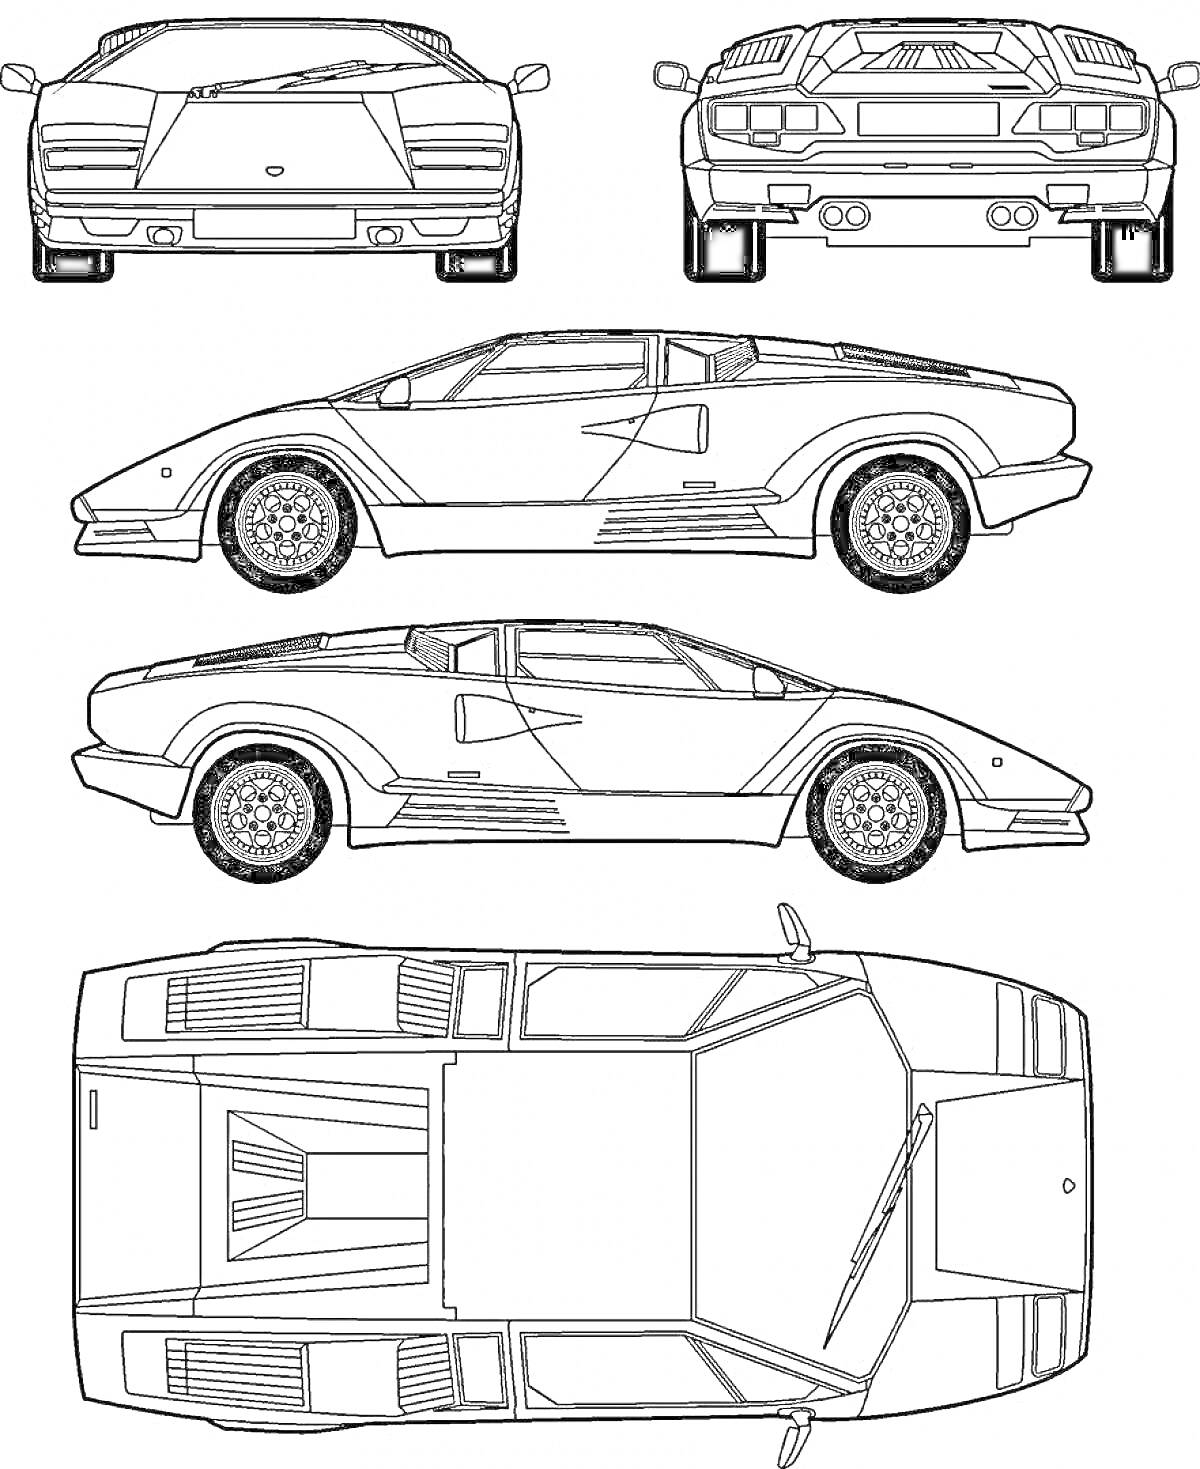 Раскраска Раскраска макета автомобиля с видами спереди, сзади, сбоку слева, сбоку справа и сверху